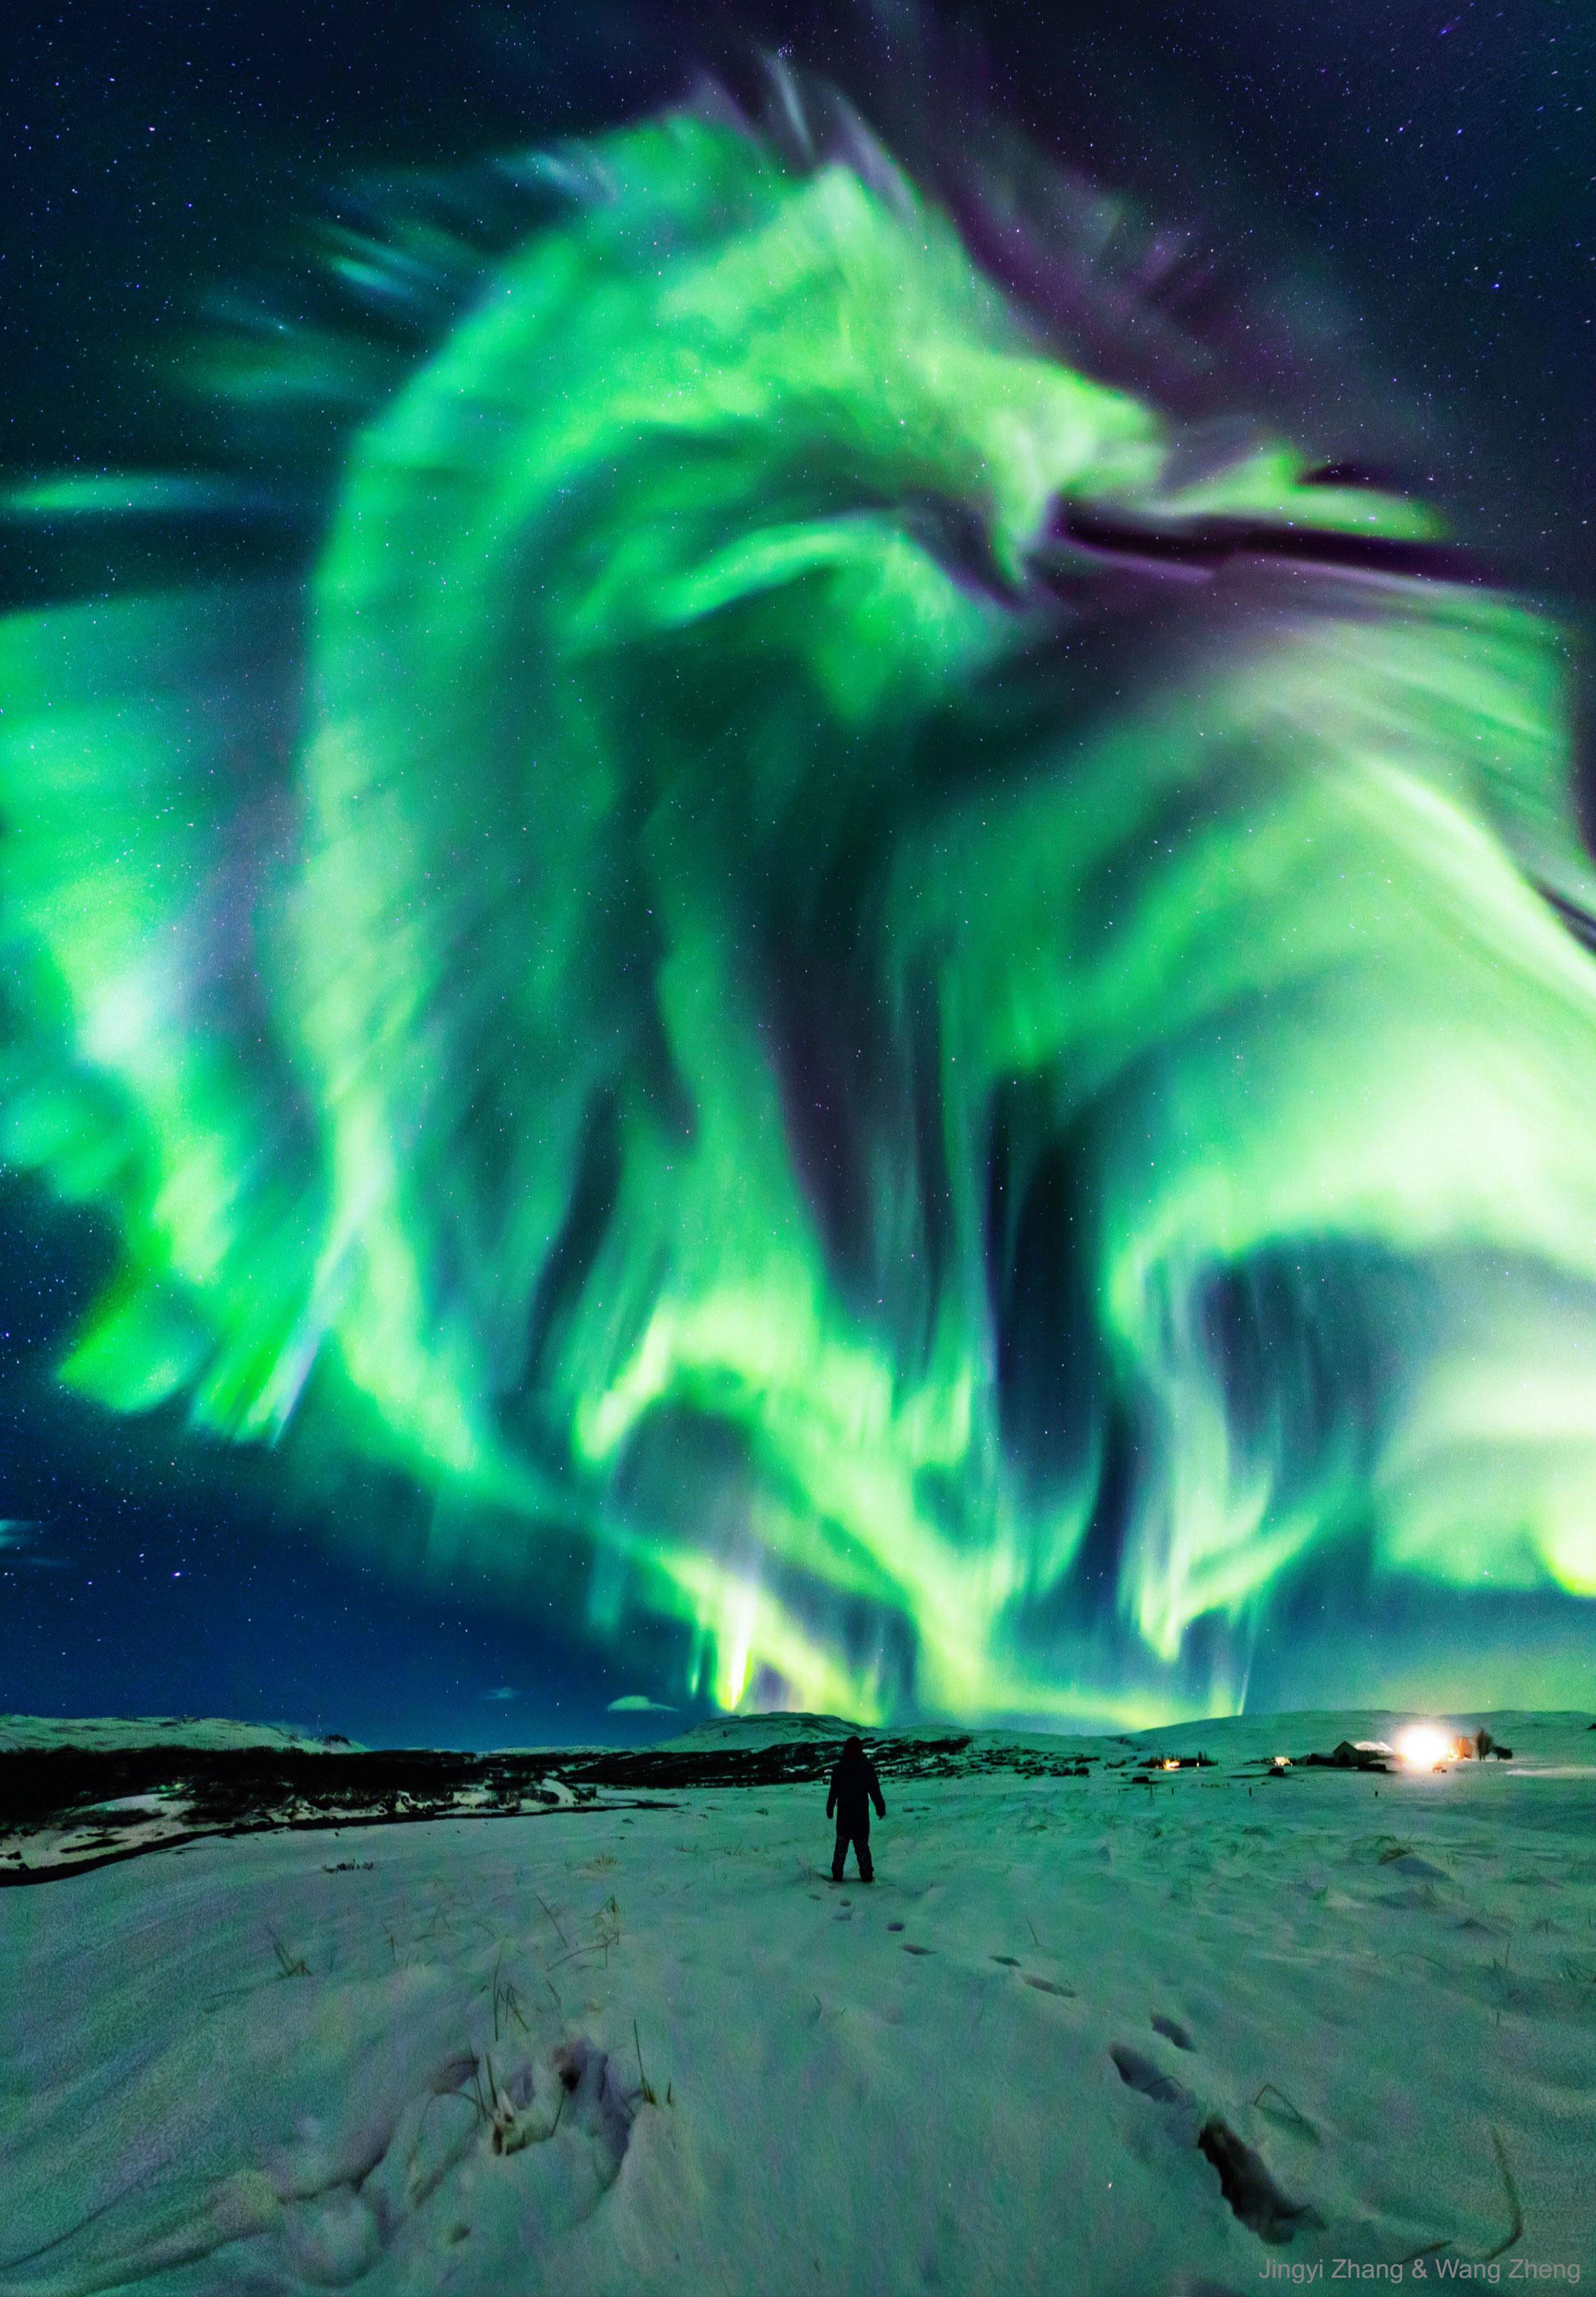 شخصٌ يقف على الثلج ناظراً إلى سماءٍ مرصّعة بالنجوم فيها شفقٌ قطبيٌّ كبير يُشبه تنّيناً.